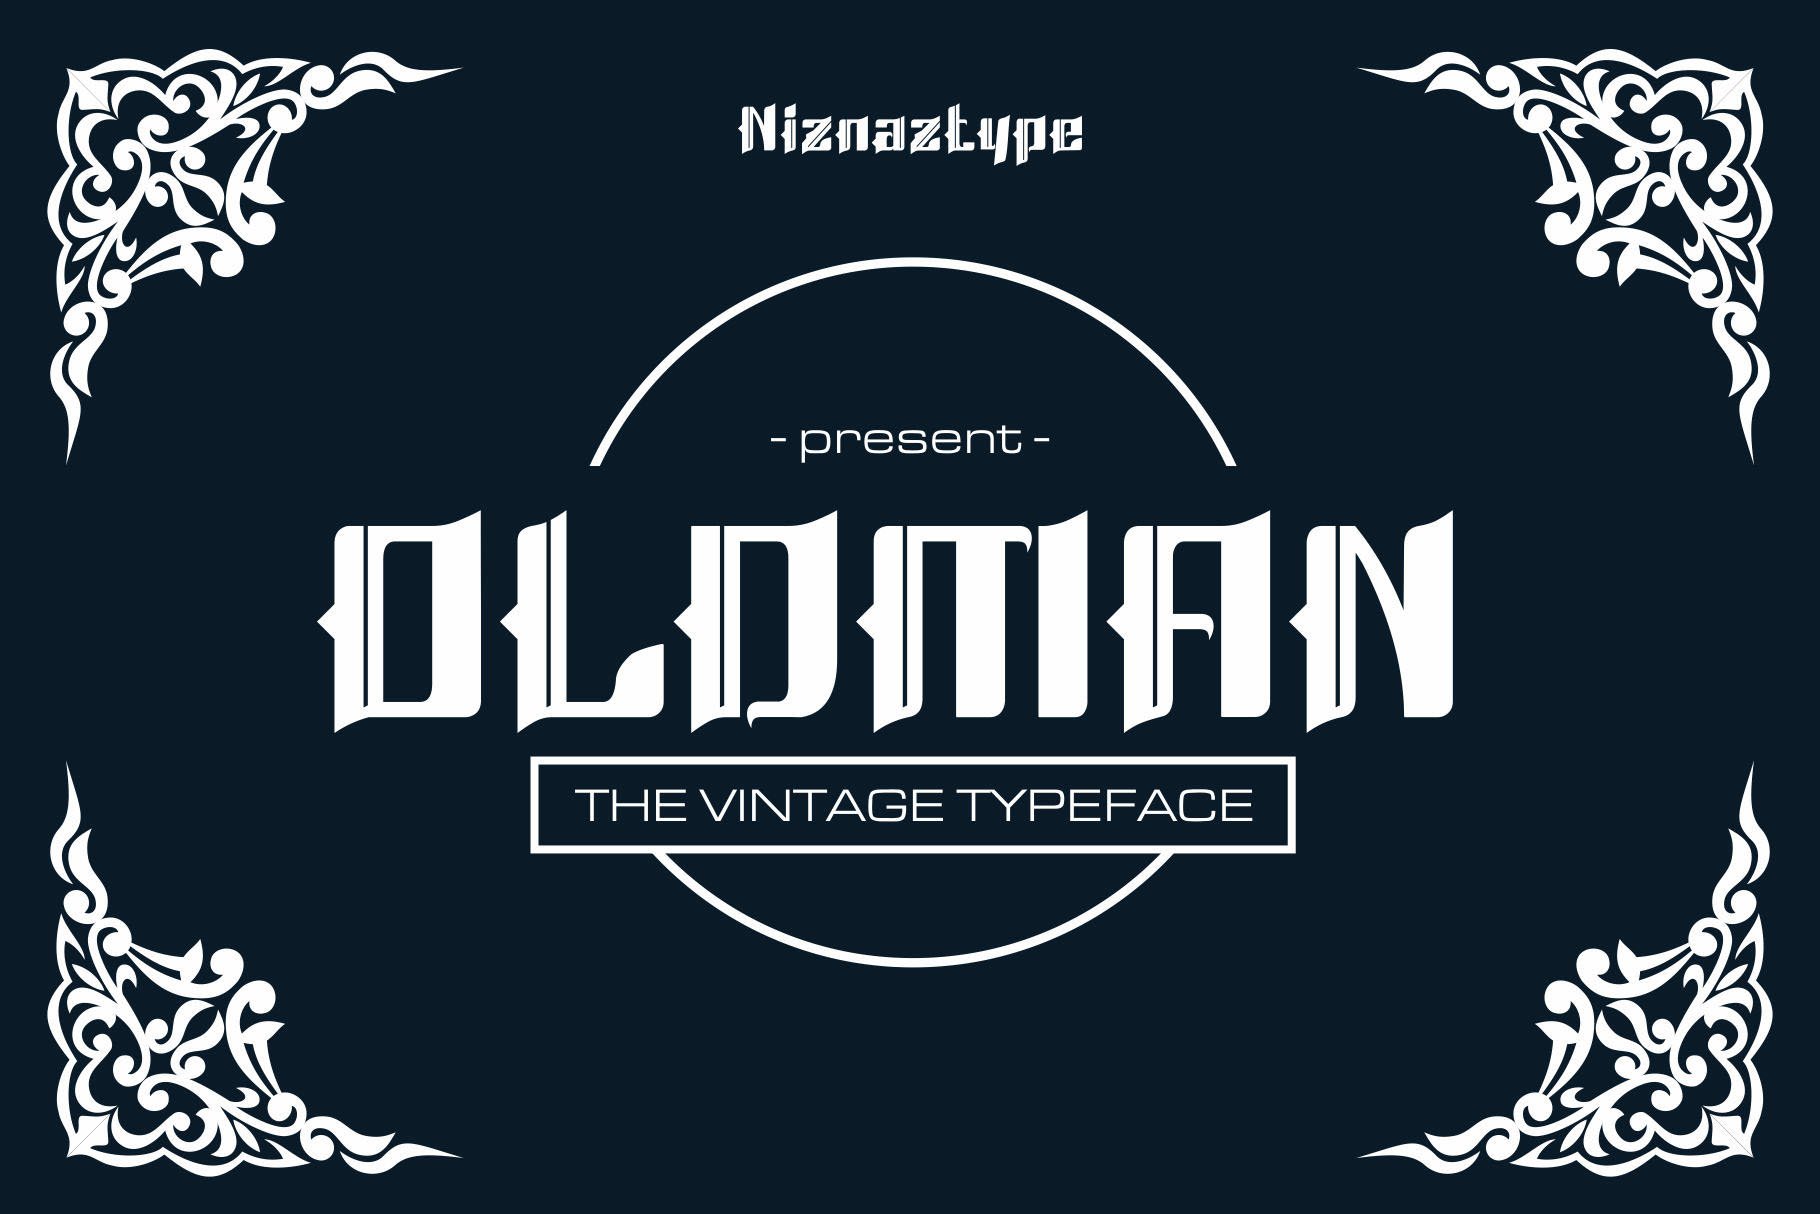 Oldman - A Vintage Fontcover image.